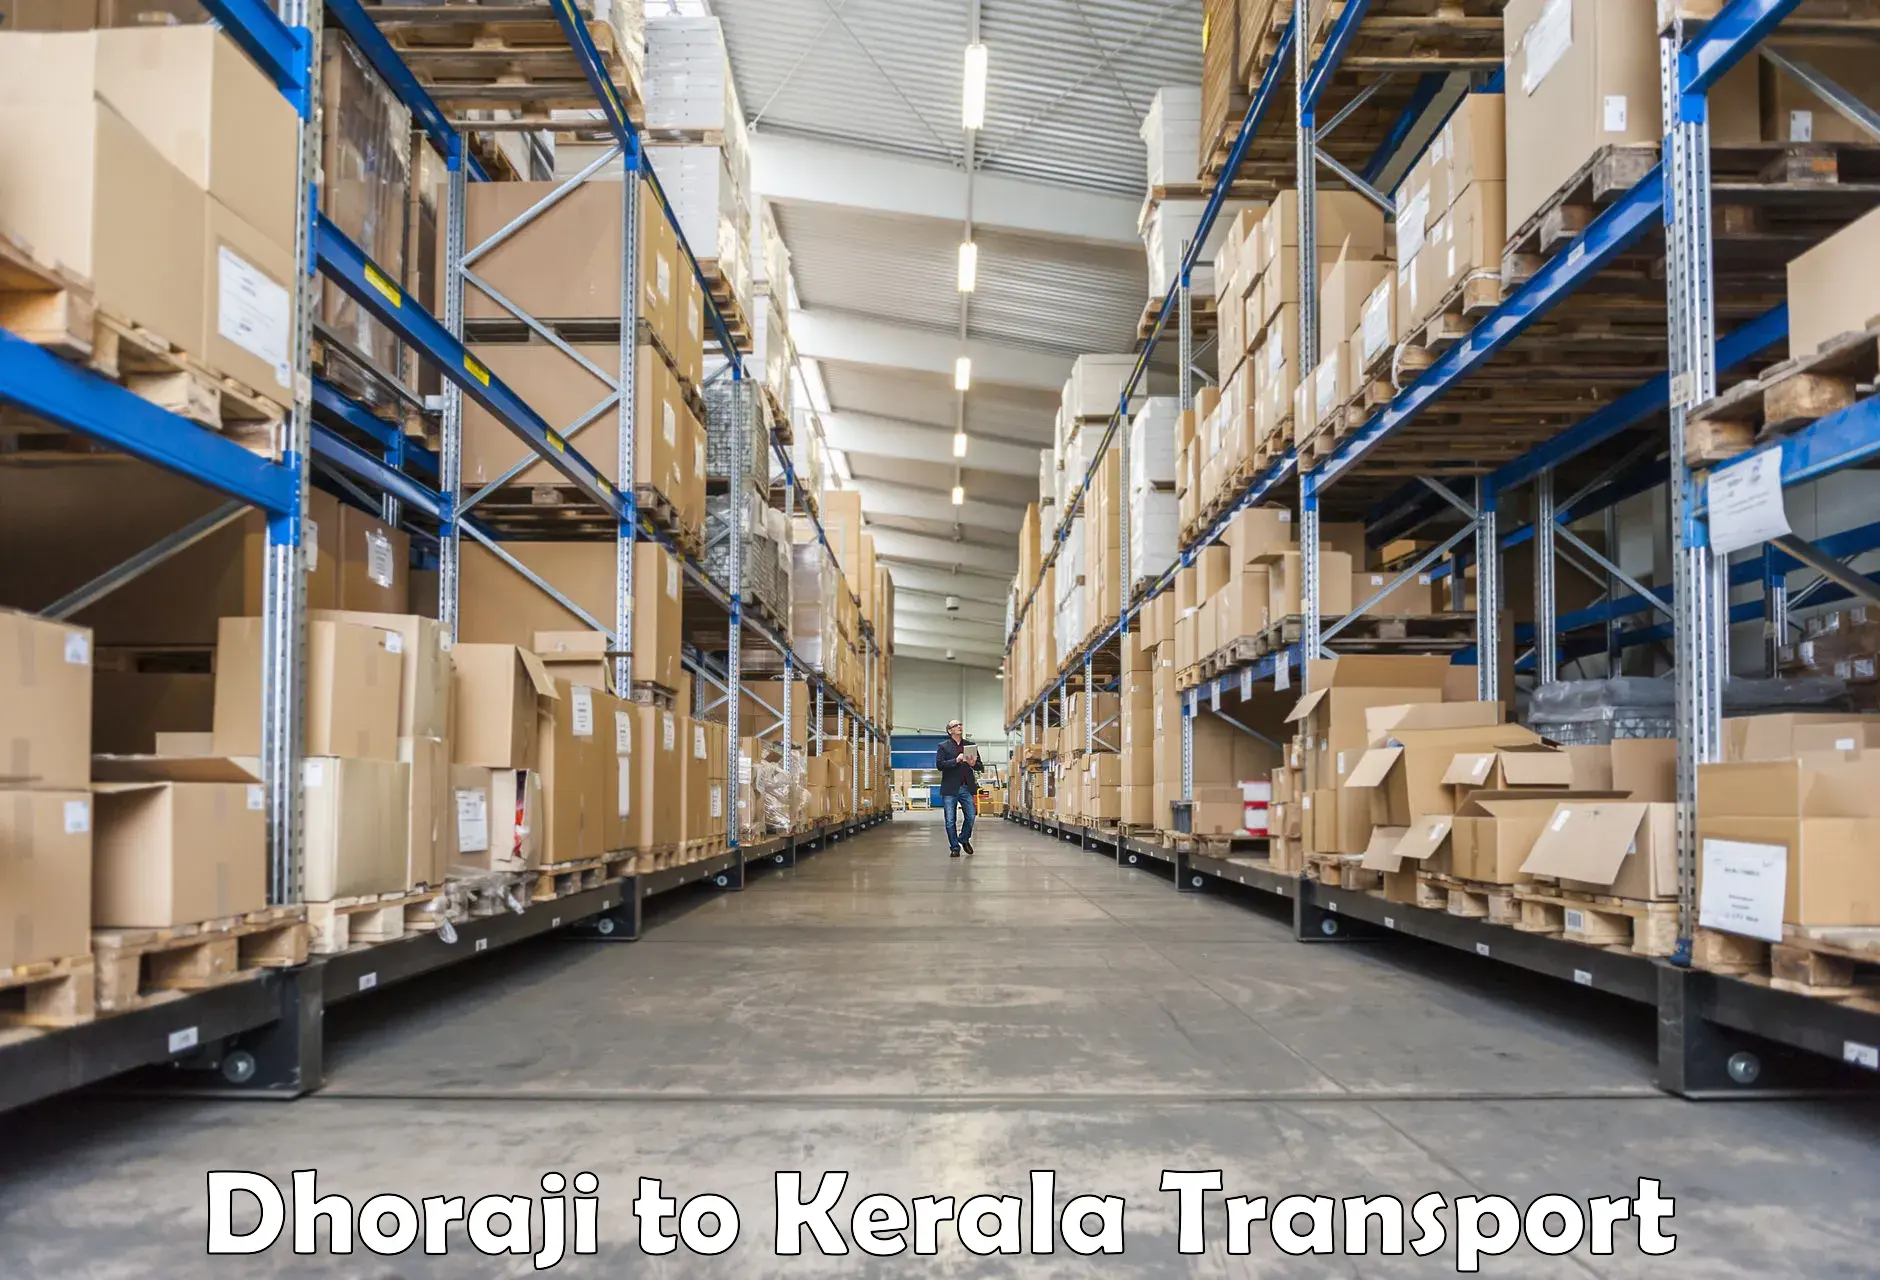 Online transport booking Dhoraji to Vadakara